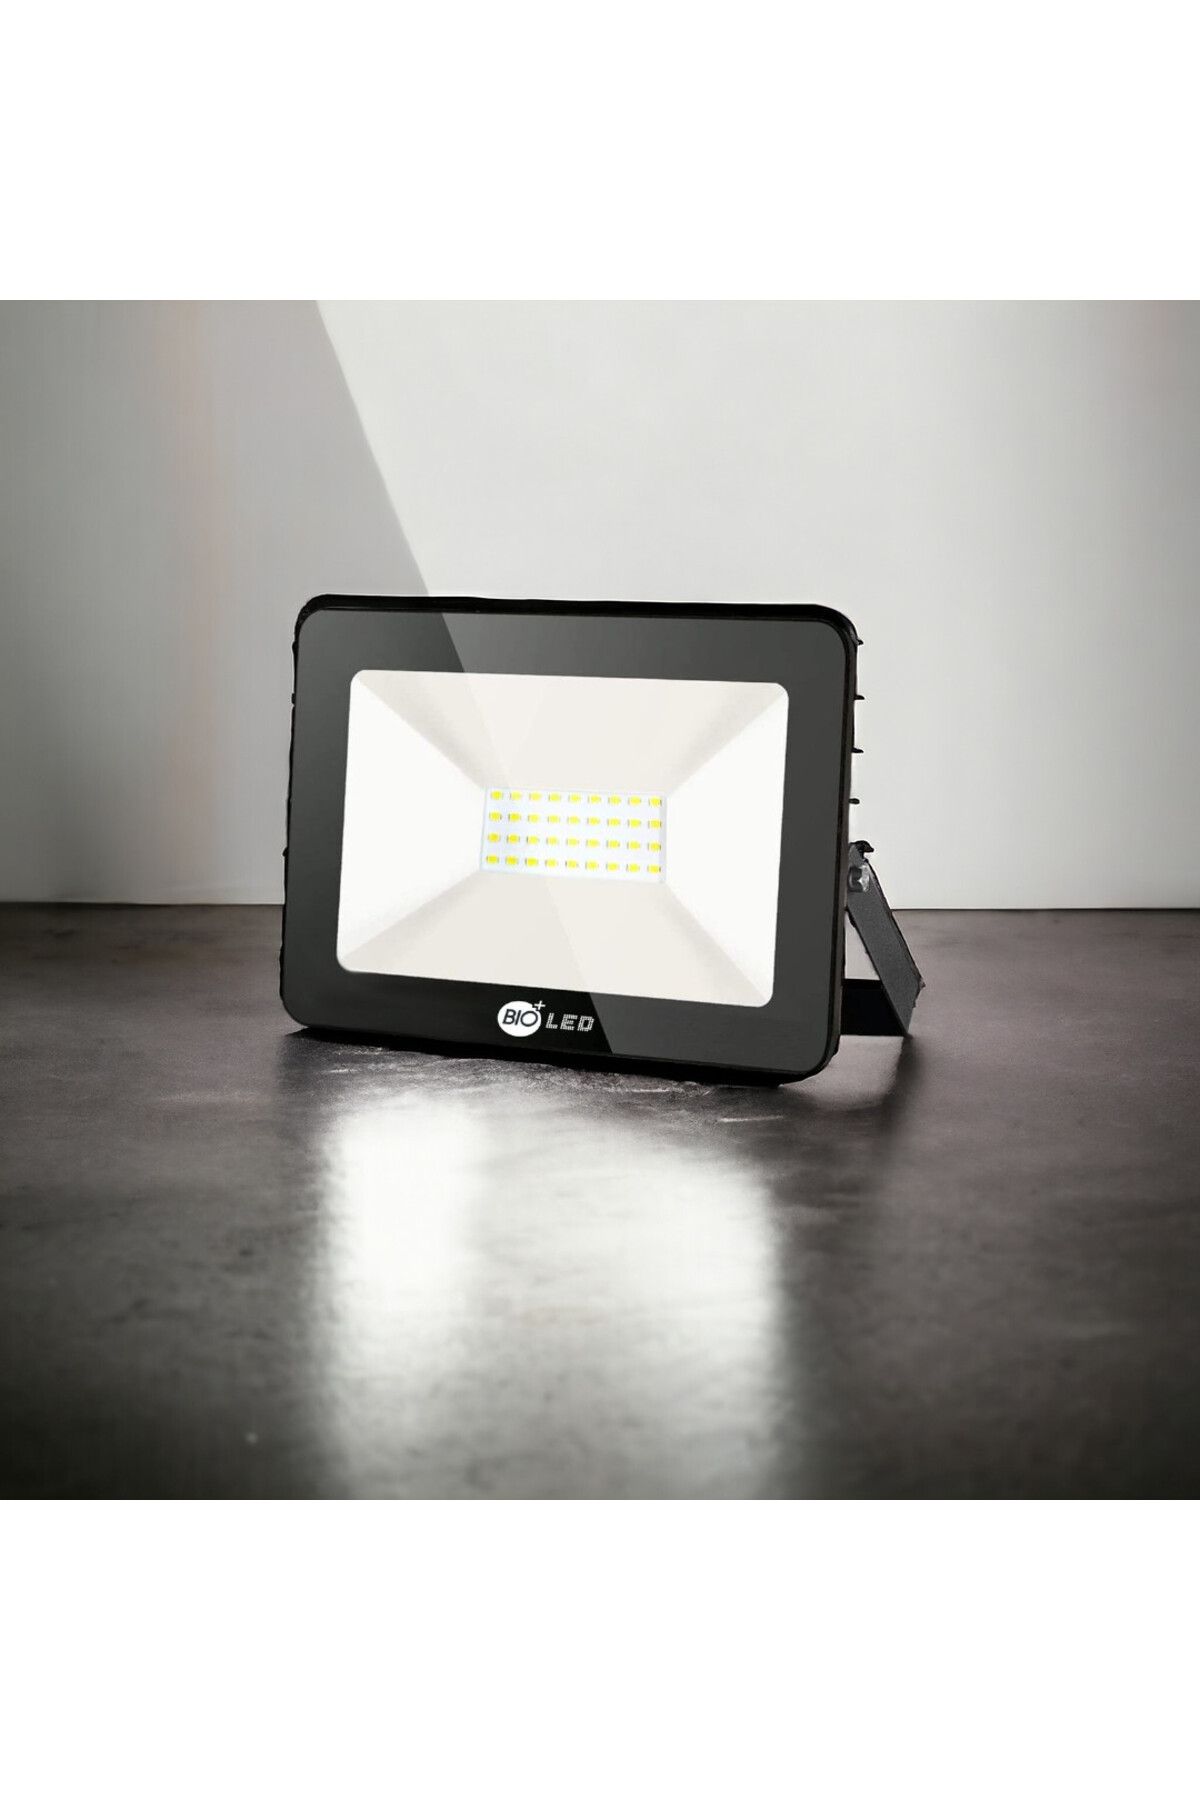 Bioled Led Projektör 30w Ledli Beyaz Işık ( Küçük Ebat ) Aydınlatma Yeni Kasa // 30 Watt